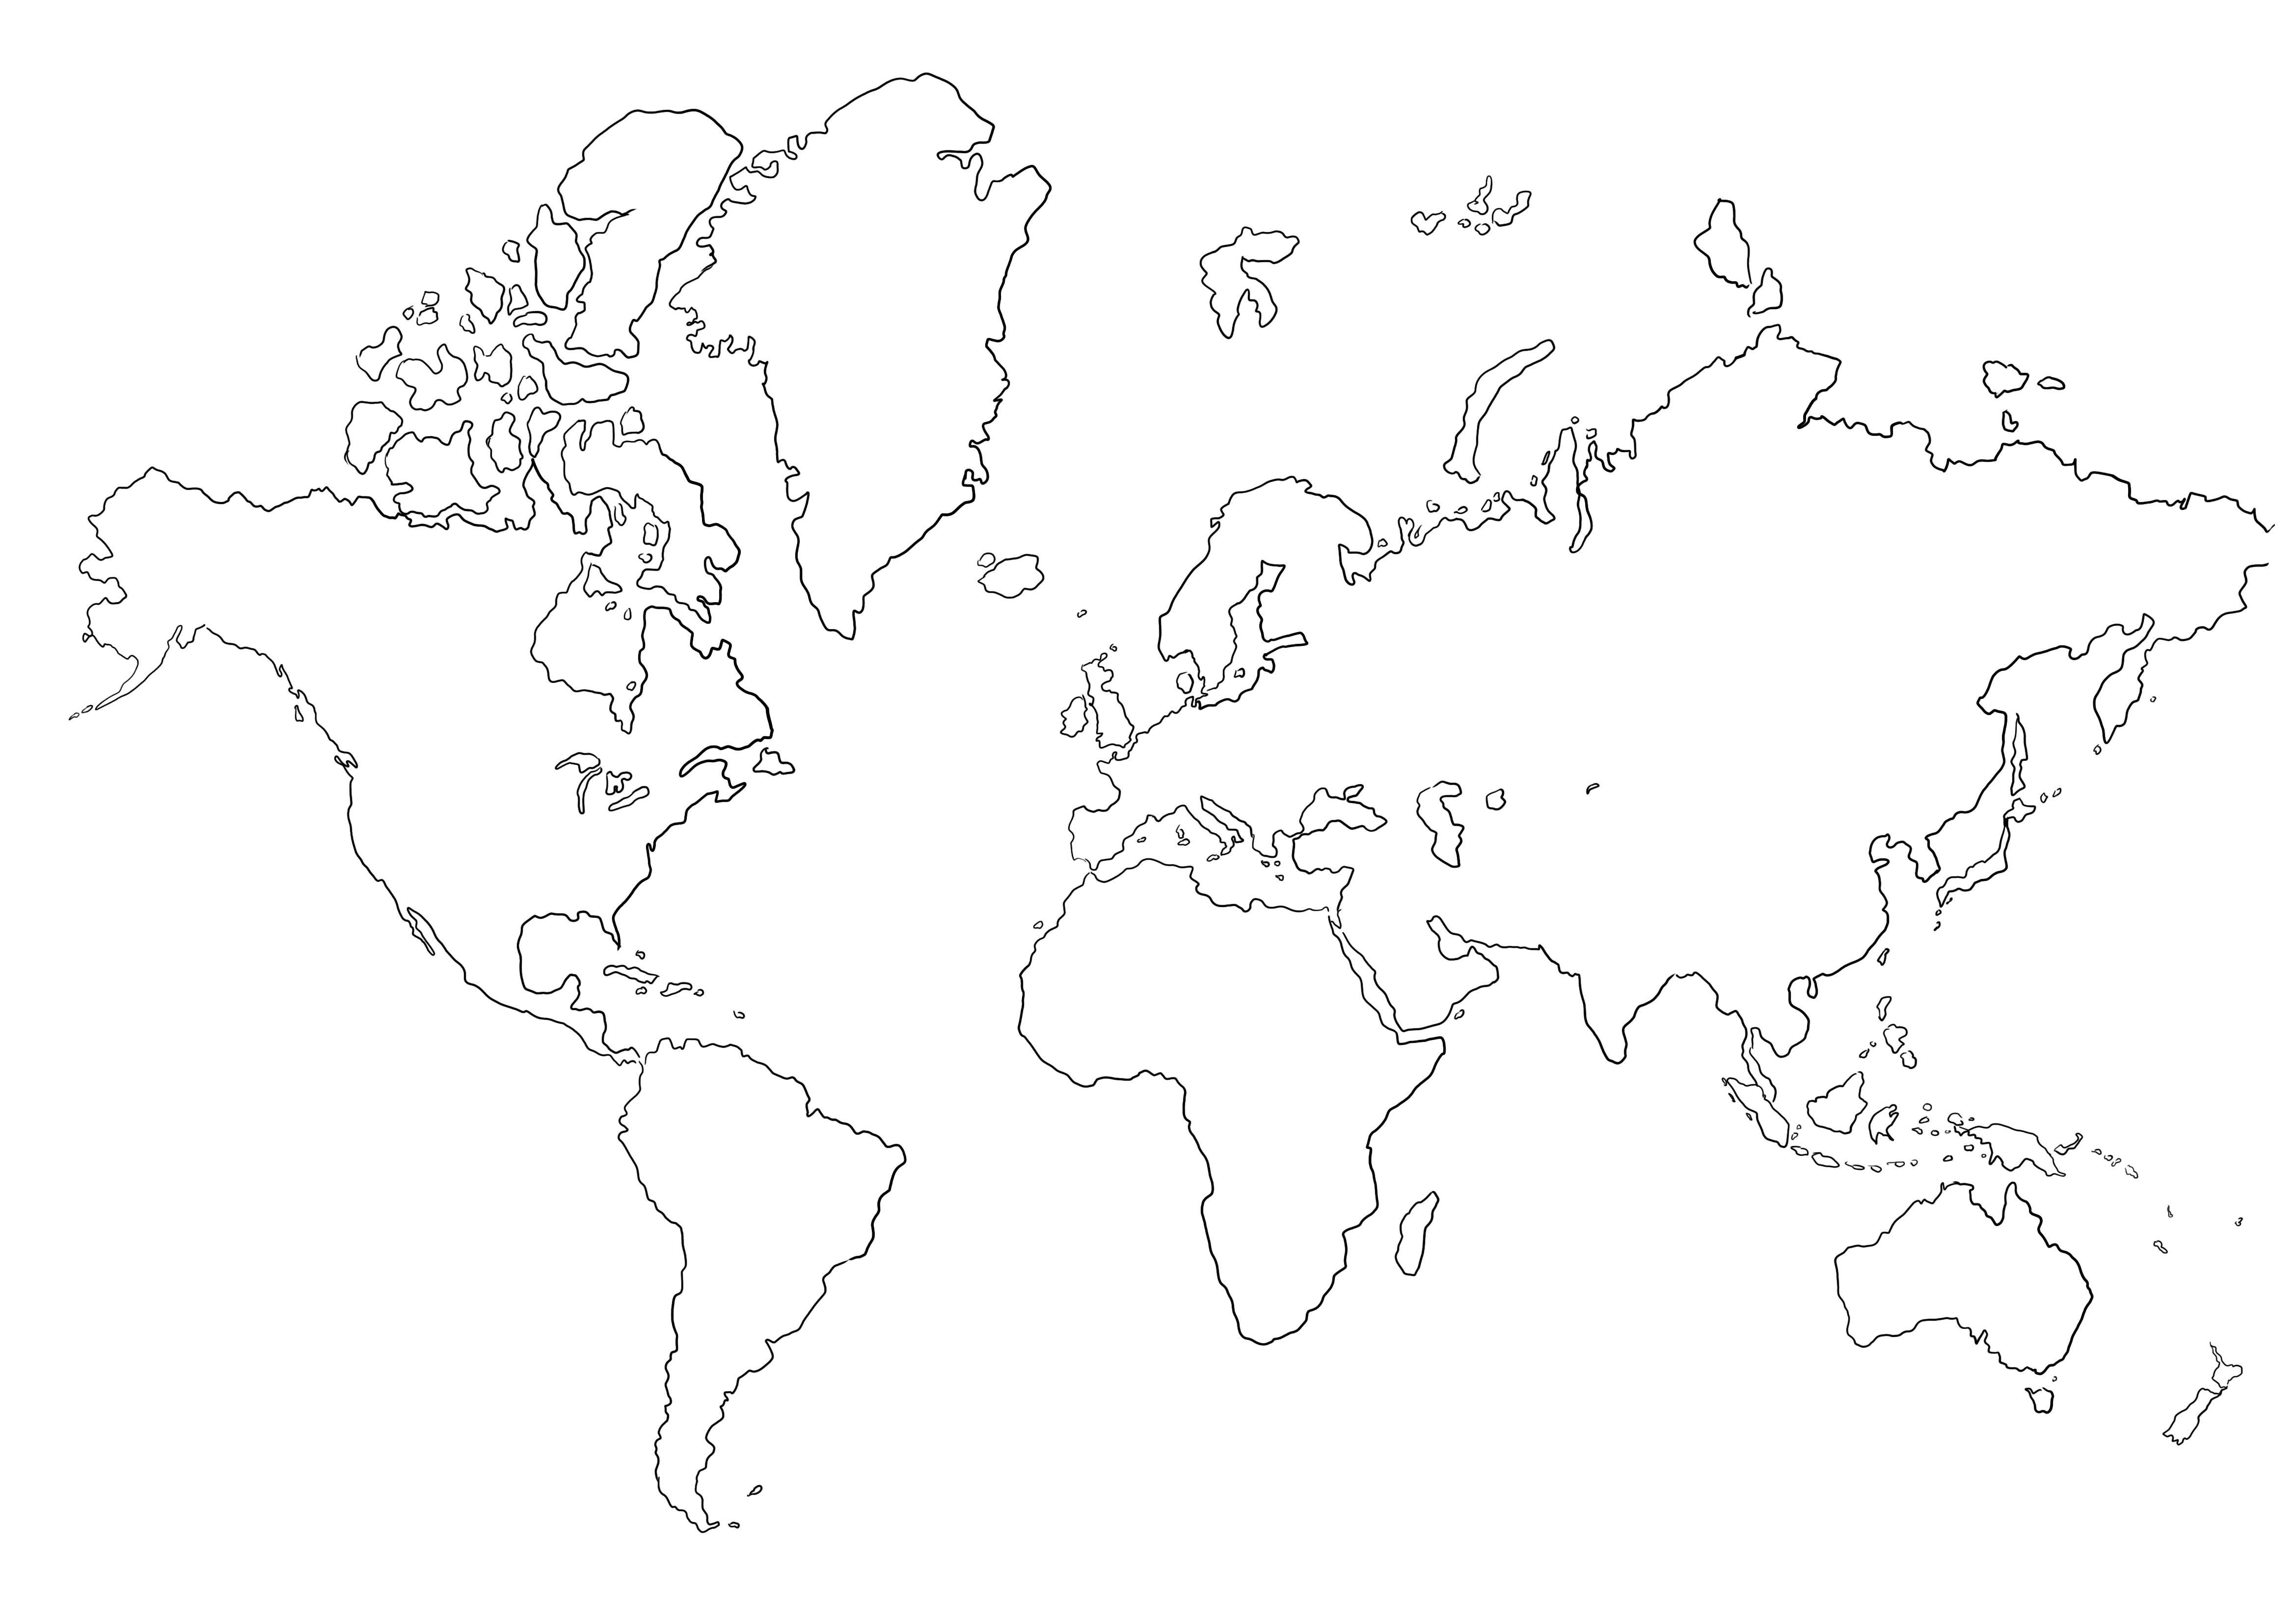 Tyhjä maailmankartta, joka värjätään ilman kuvia tulostettavaksi tai tallennettavaksi myöhempää käyttöä varten